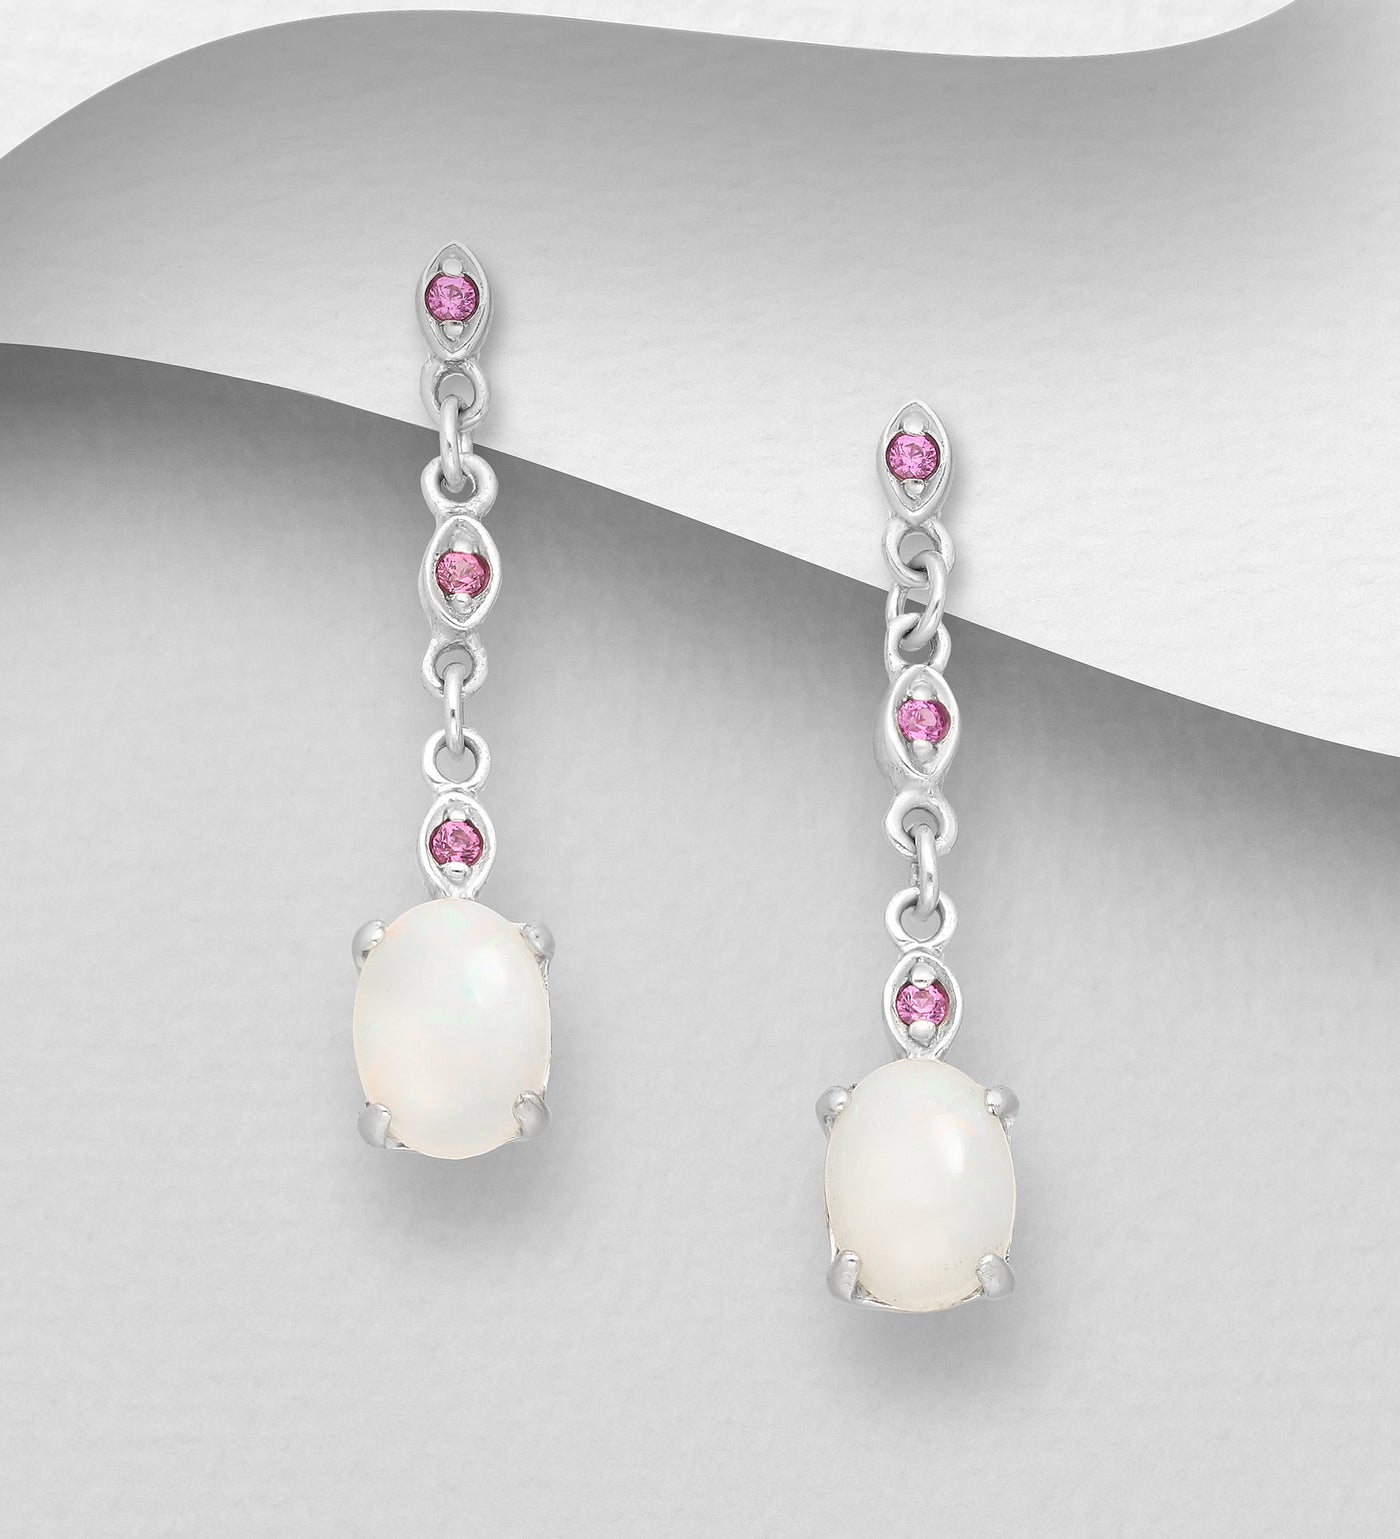 Opal & Rhodolite Sterling Silver Chain Dangle Earrings